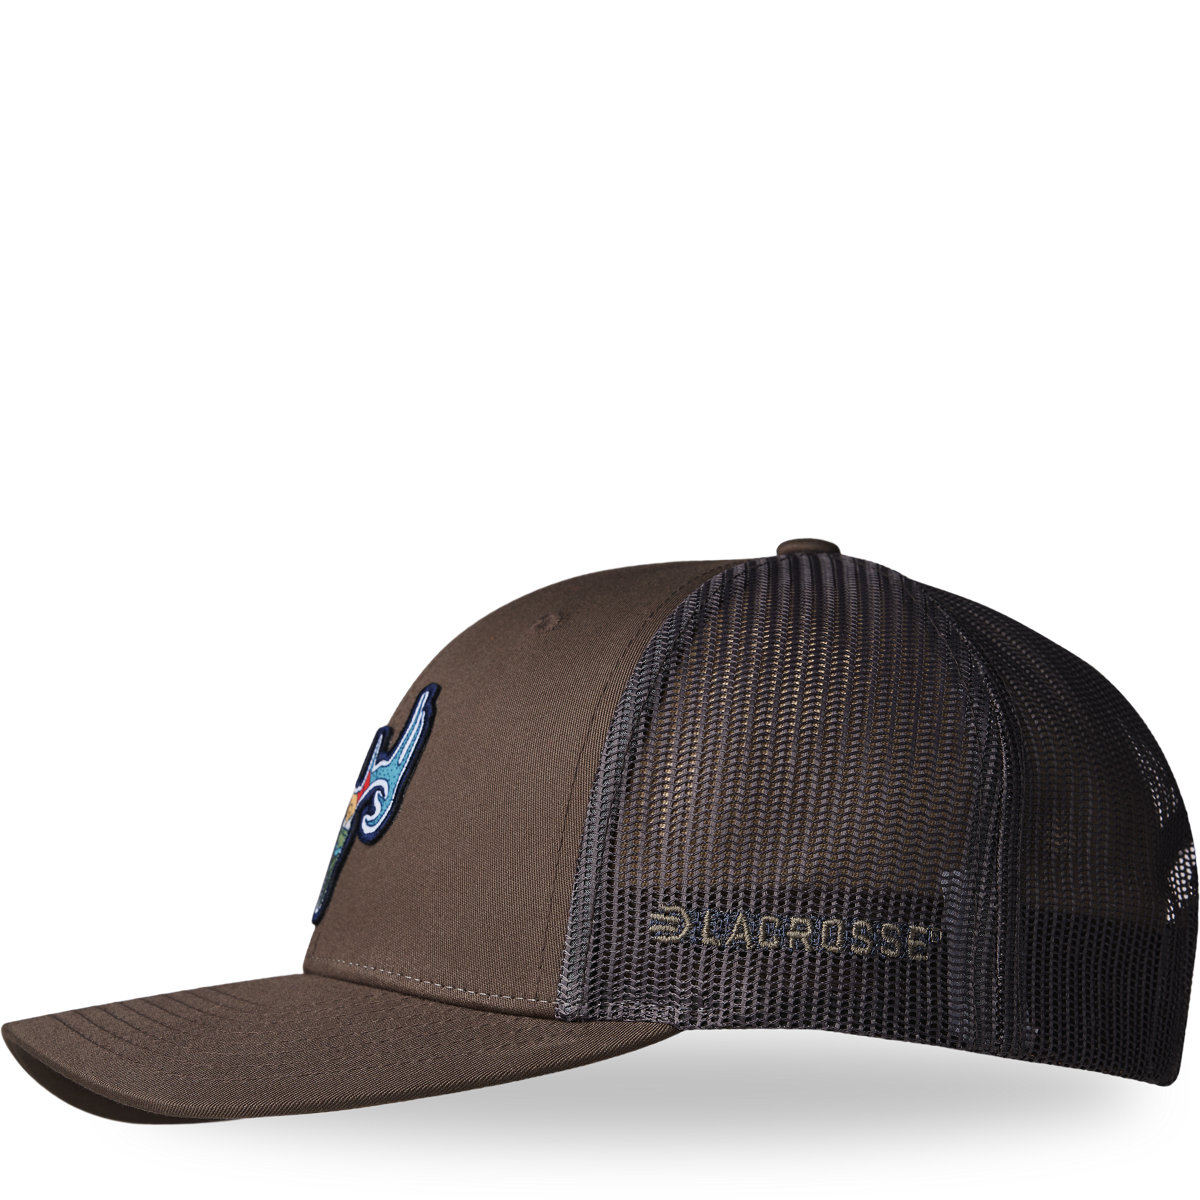 - Deer Footwear LaCrosse Hat - Chip/Grey Brown LaCrosse Trucker Choc